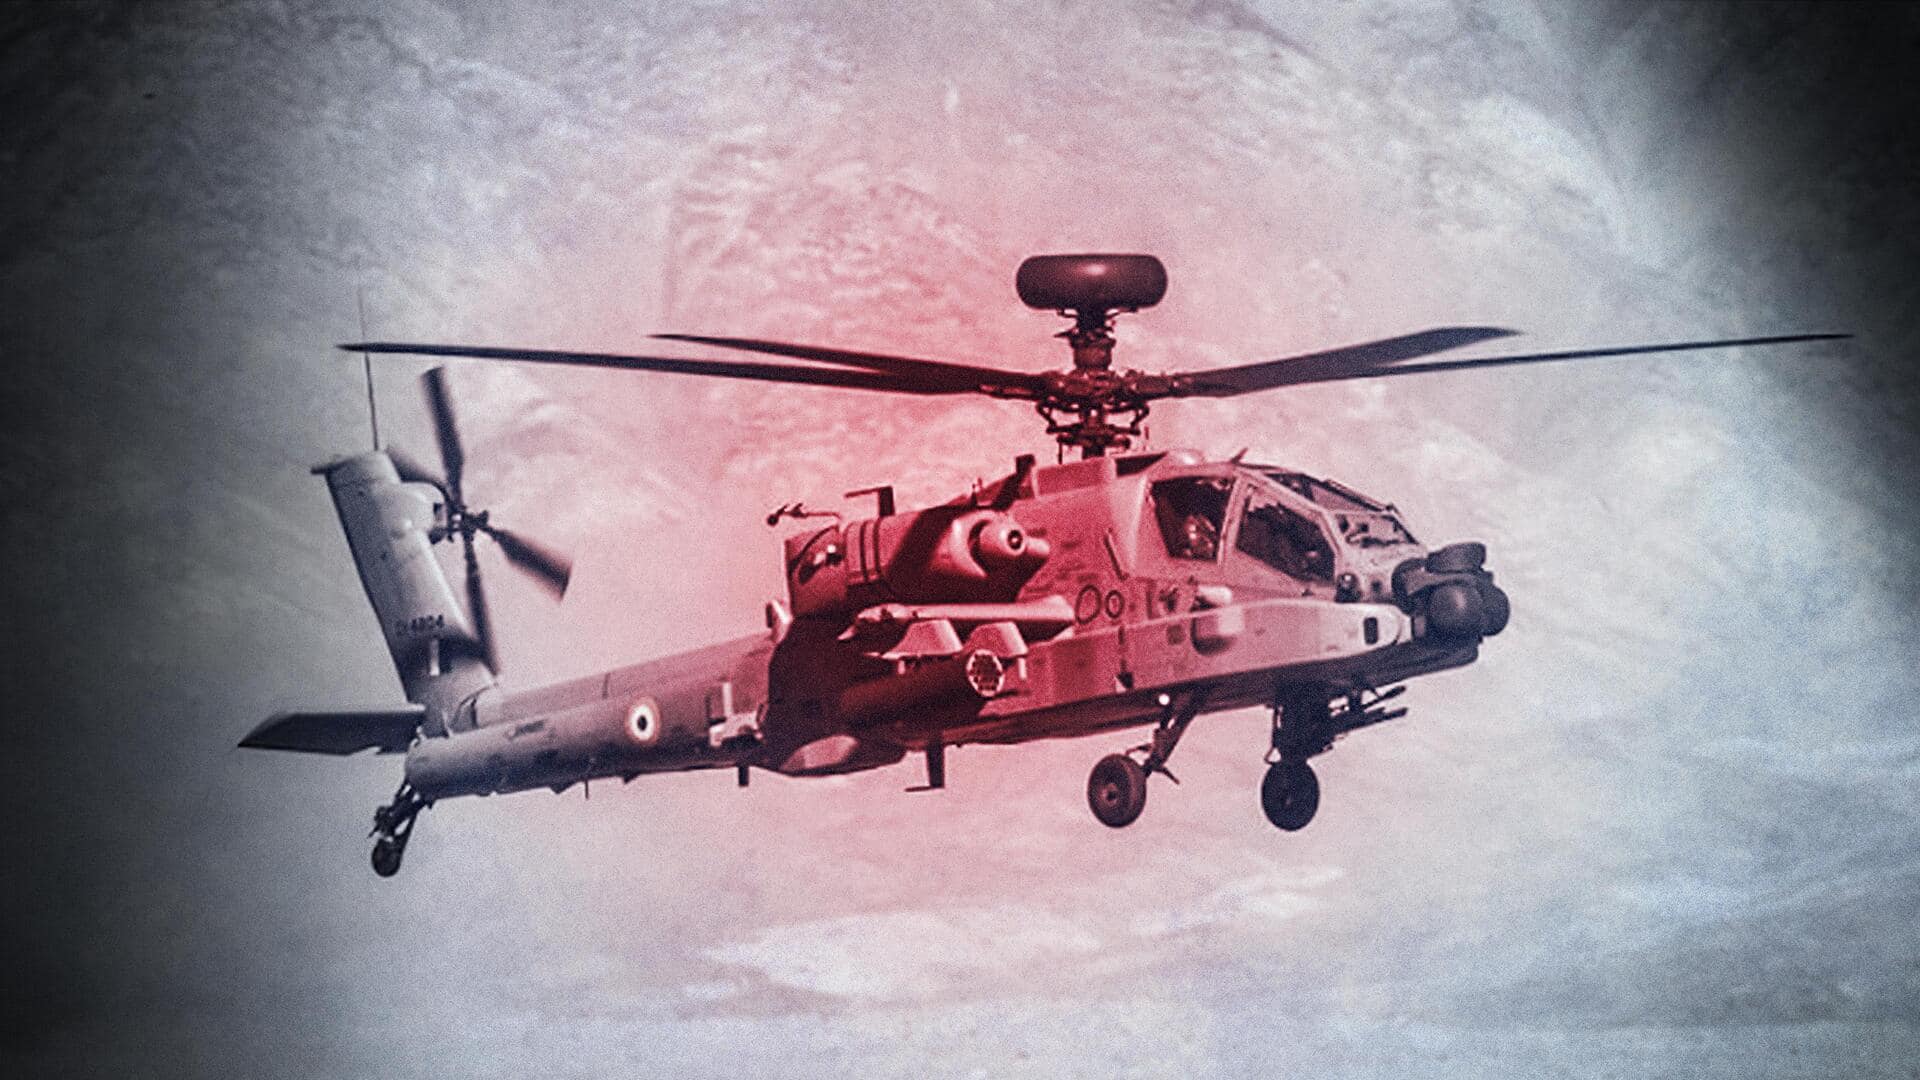 IAF Apache chopper damaged during emergency landing in Ladakh